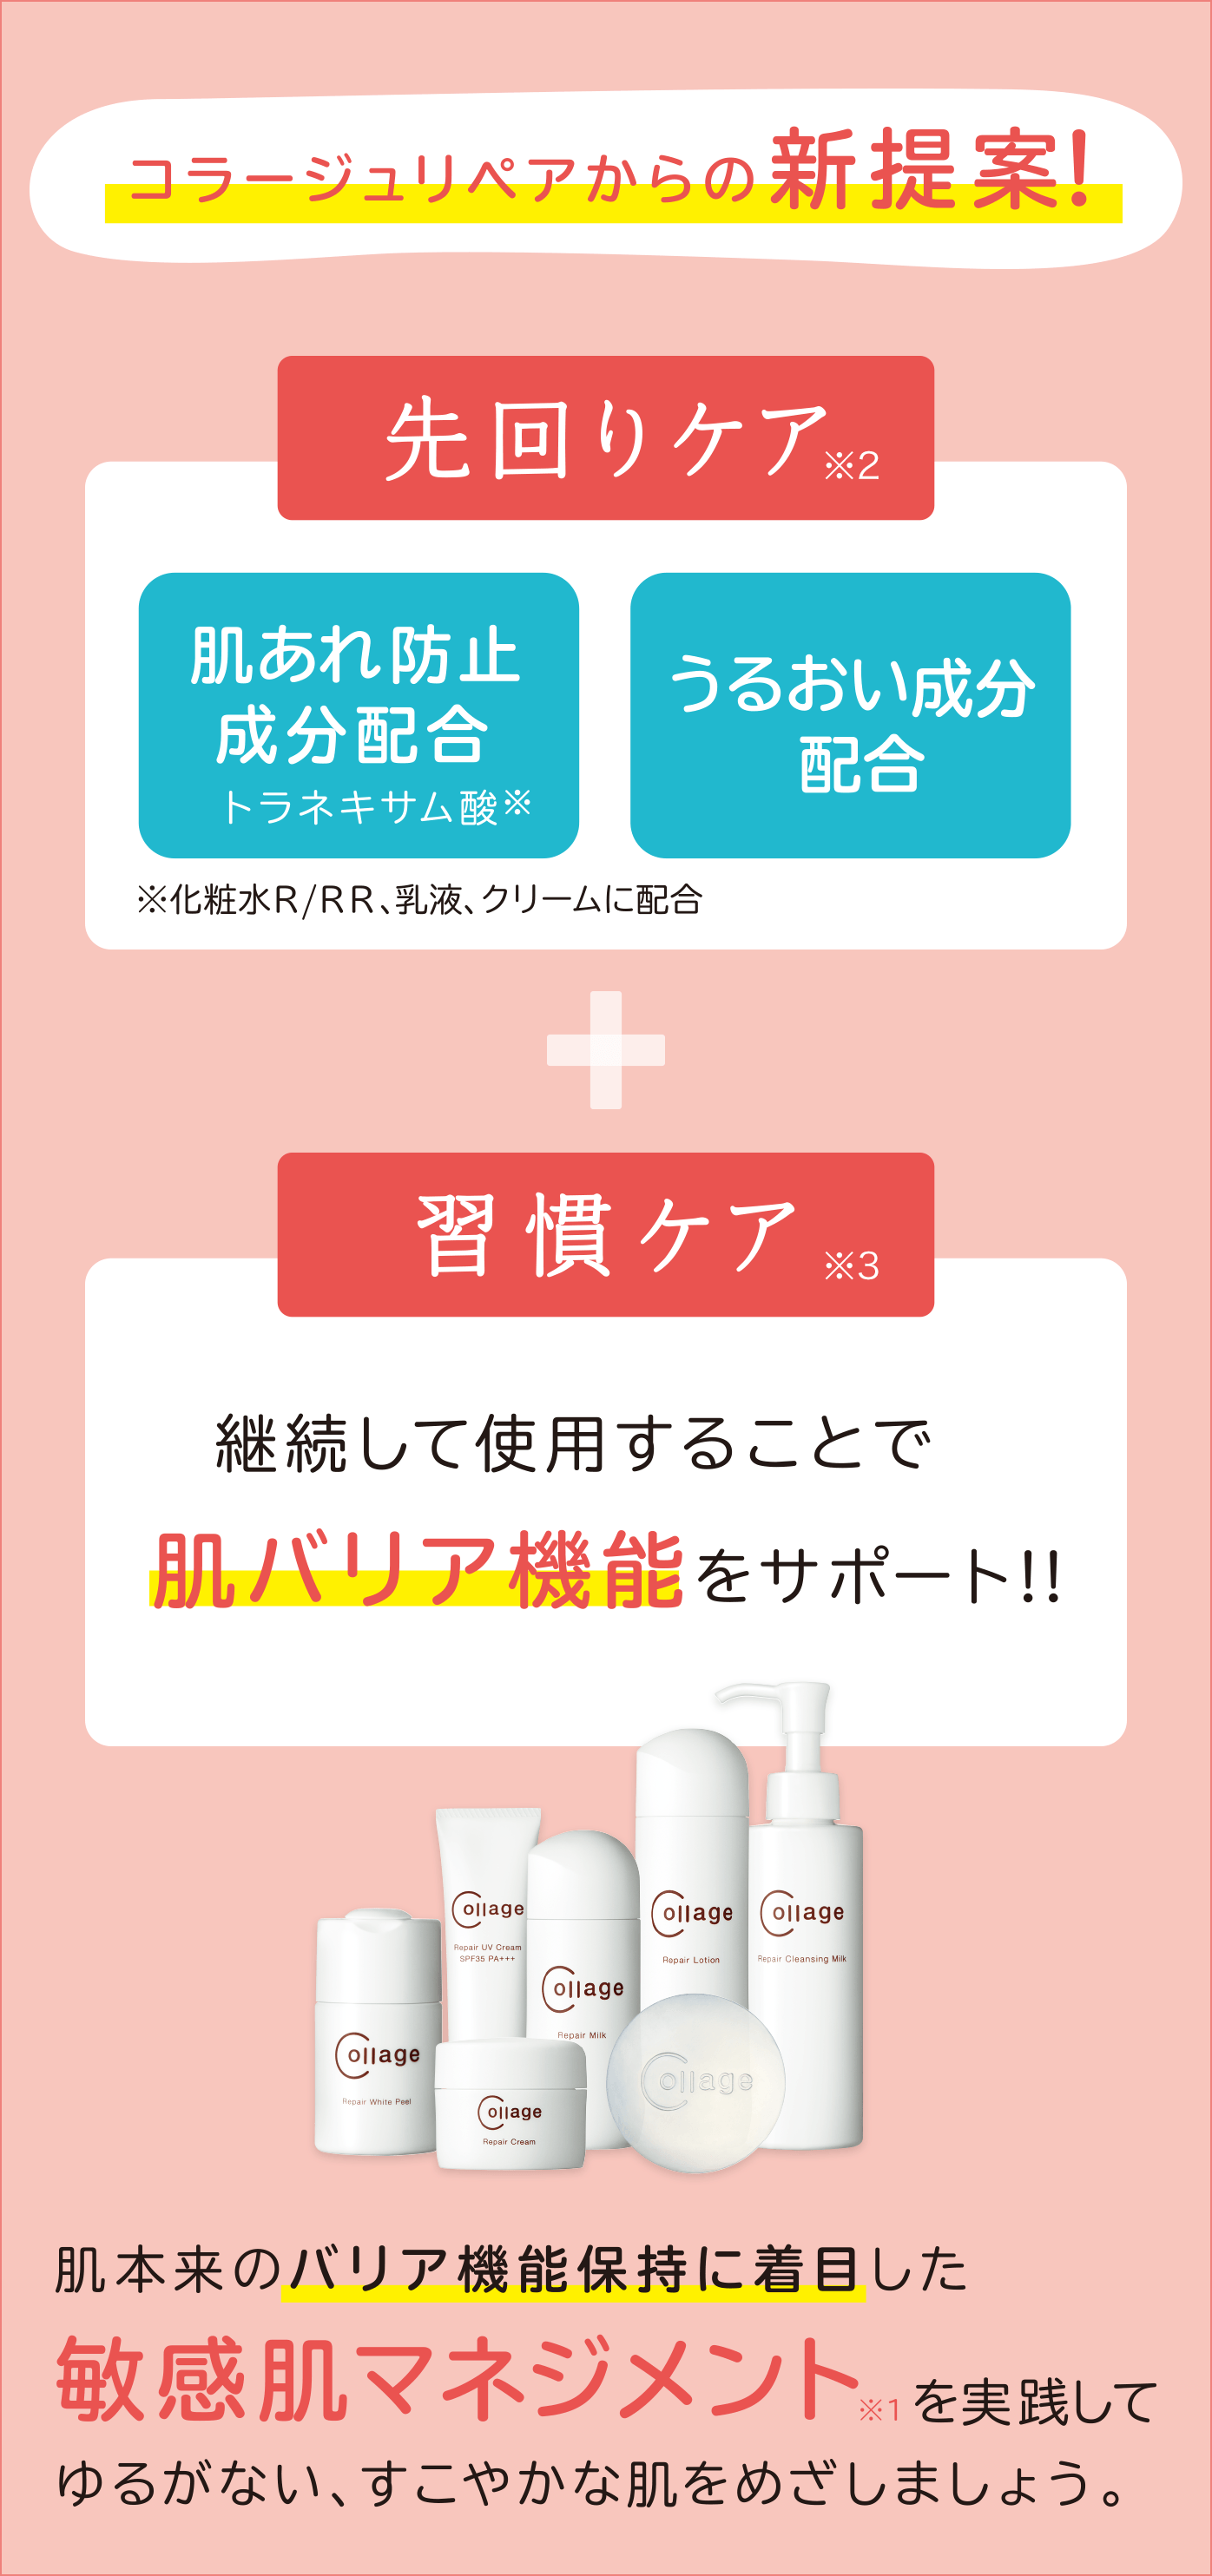 コラージュリペア化粧品|【公式】持田ヘルスケアのオンラインショップ